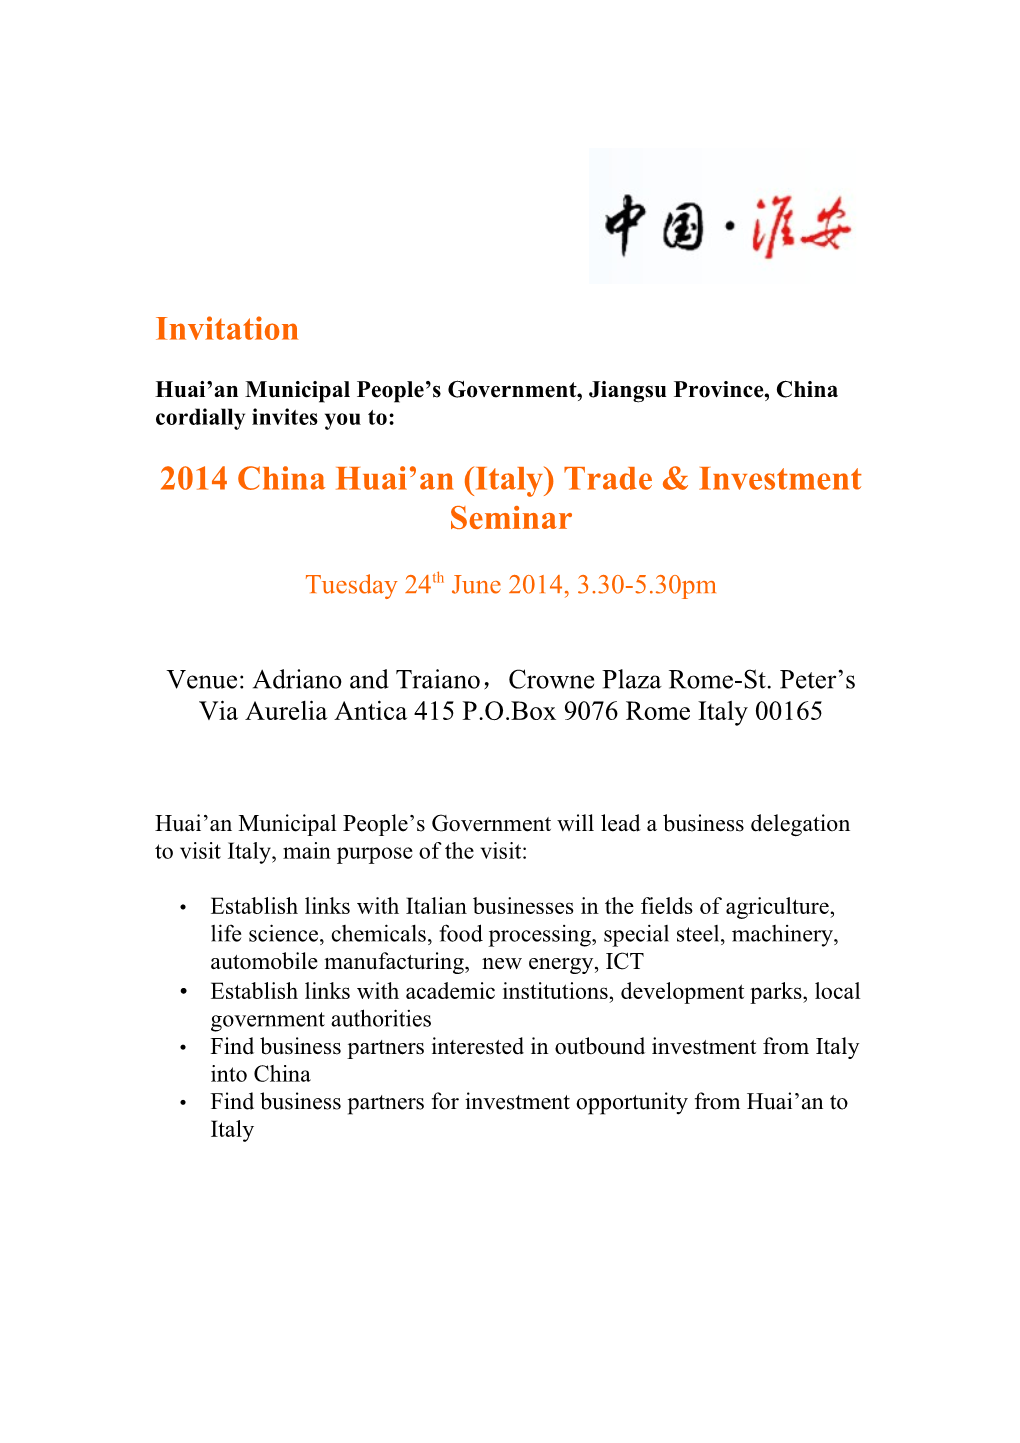 Invitation 2014 China Huai'an (Italy) Trade & Investment Seminar